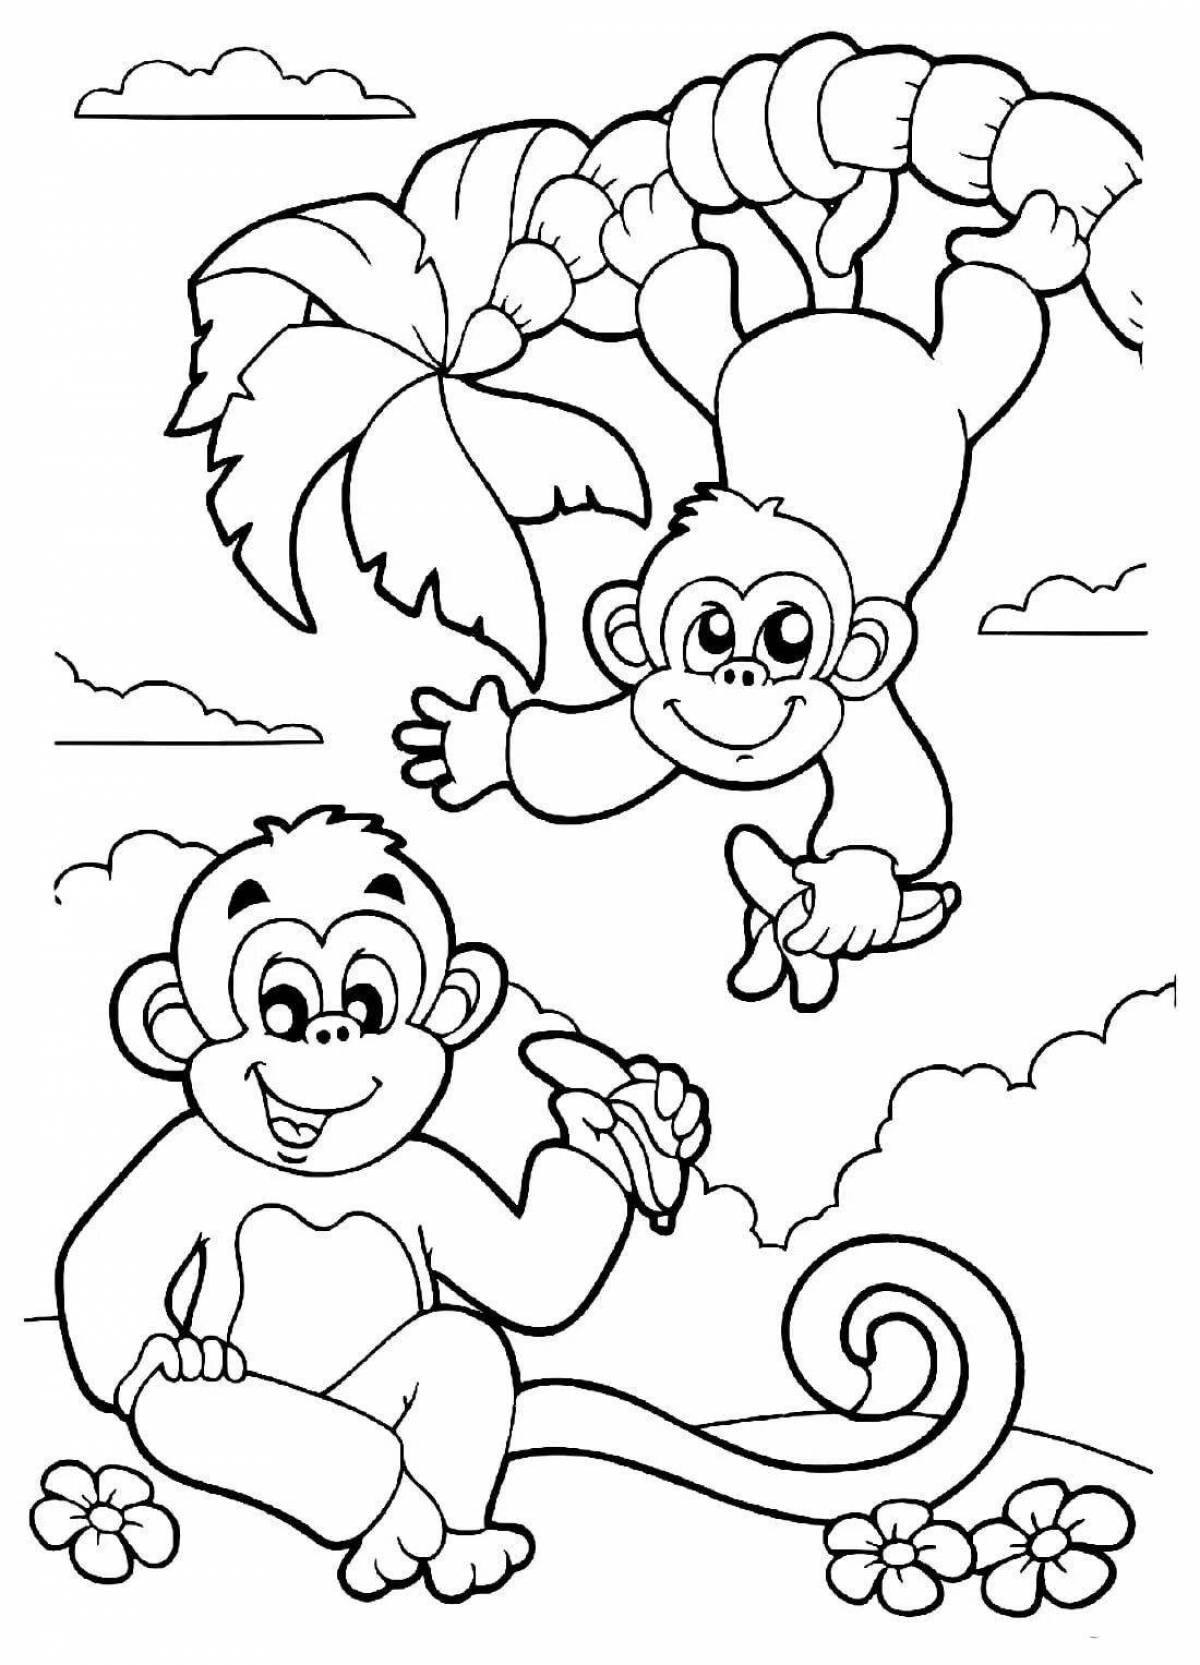 Приветливая раскраска обезьяна с бананом